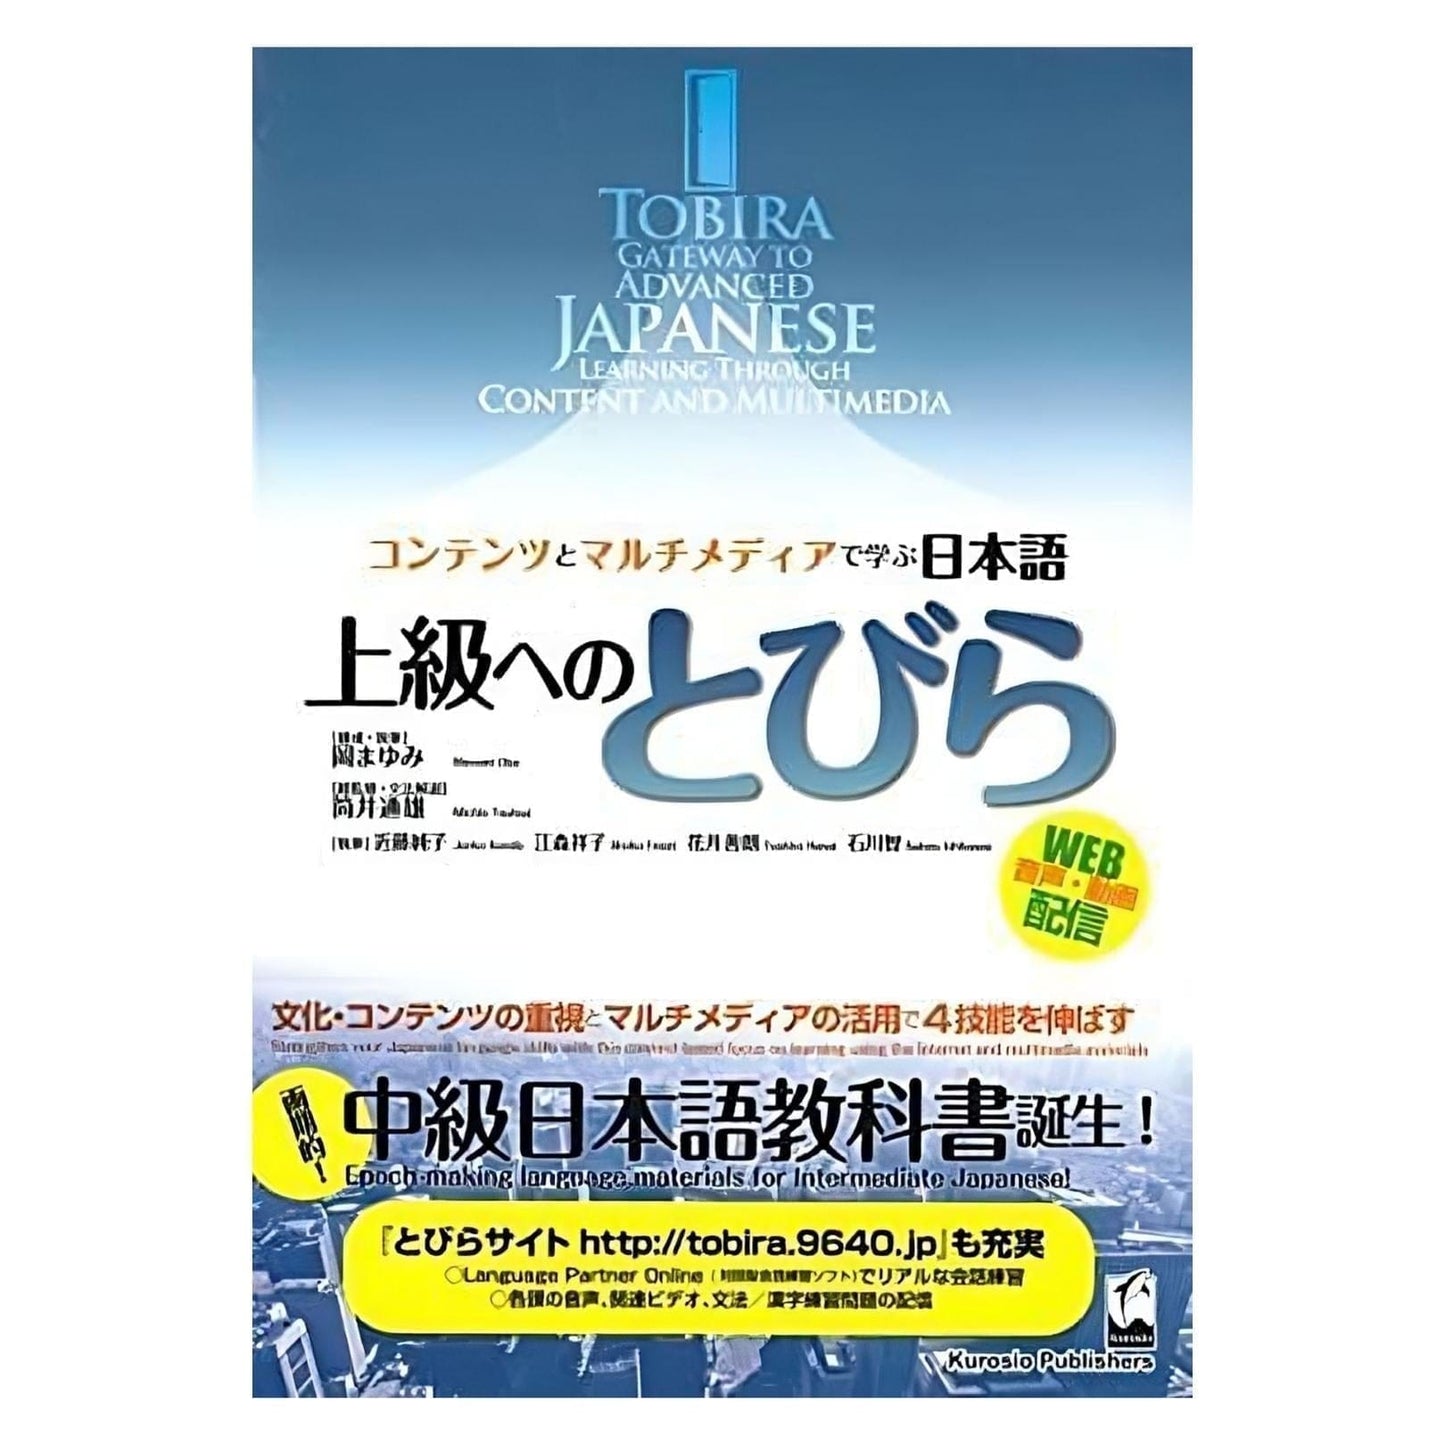 Japanisches Handbuch | Tobira Gateway to Advanced Japanese ChitoroShop